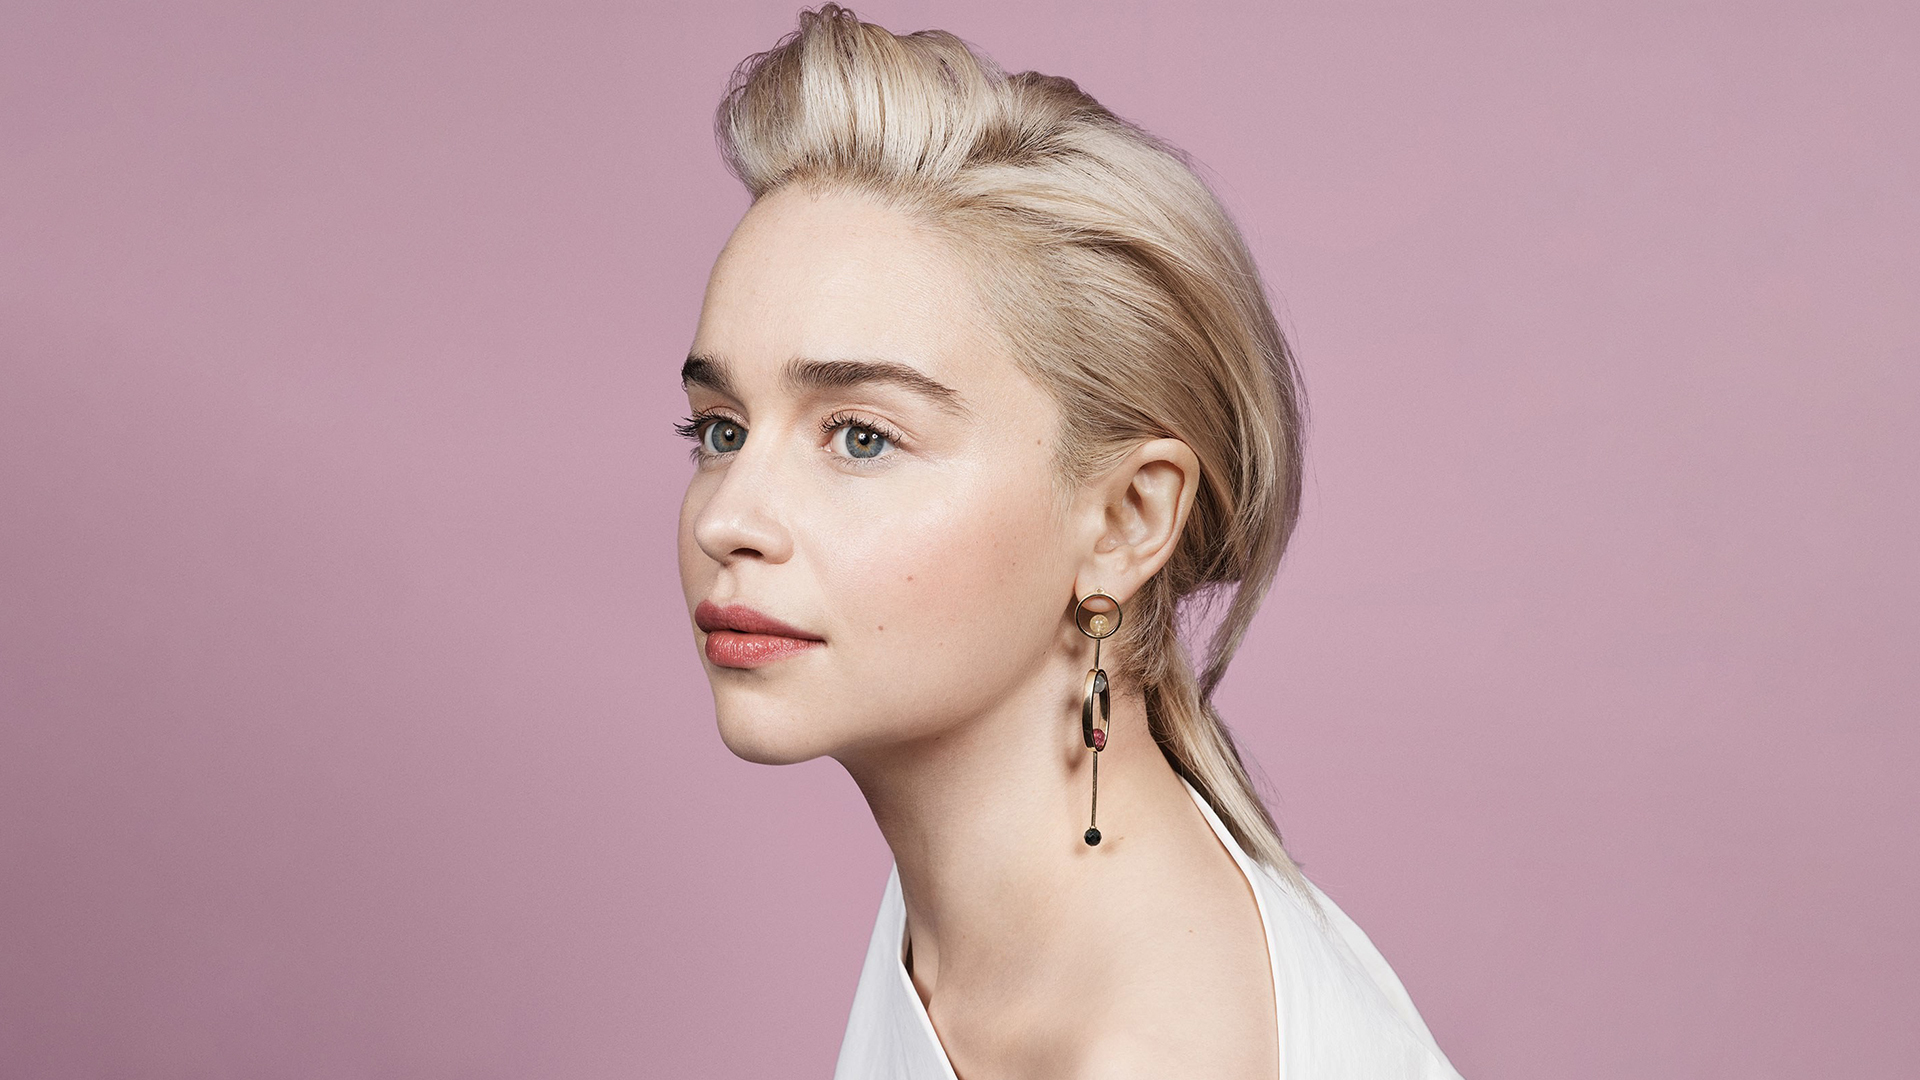 Emilia Clarke for Vanity Fair 2018